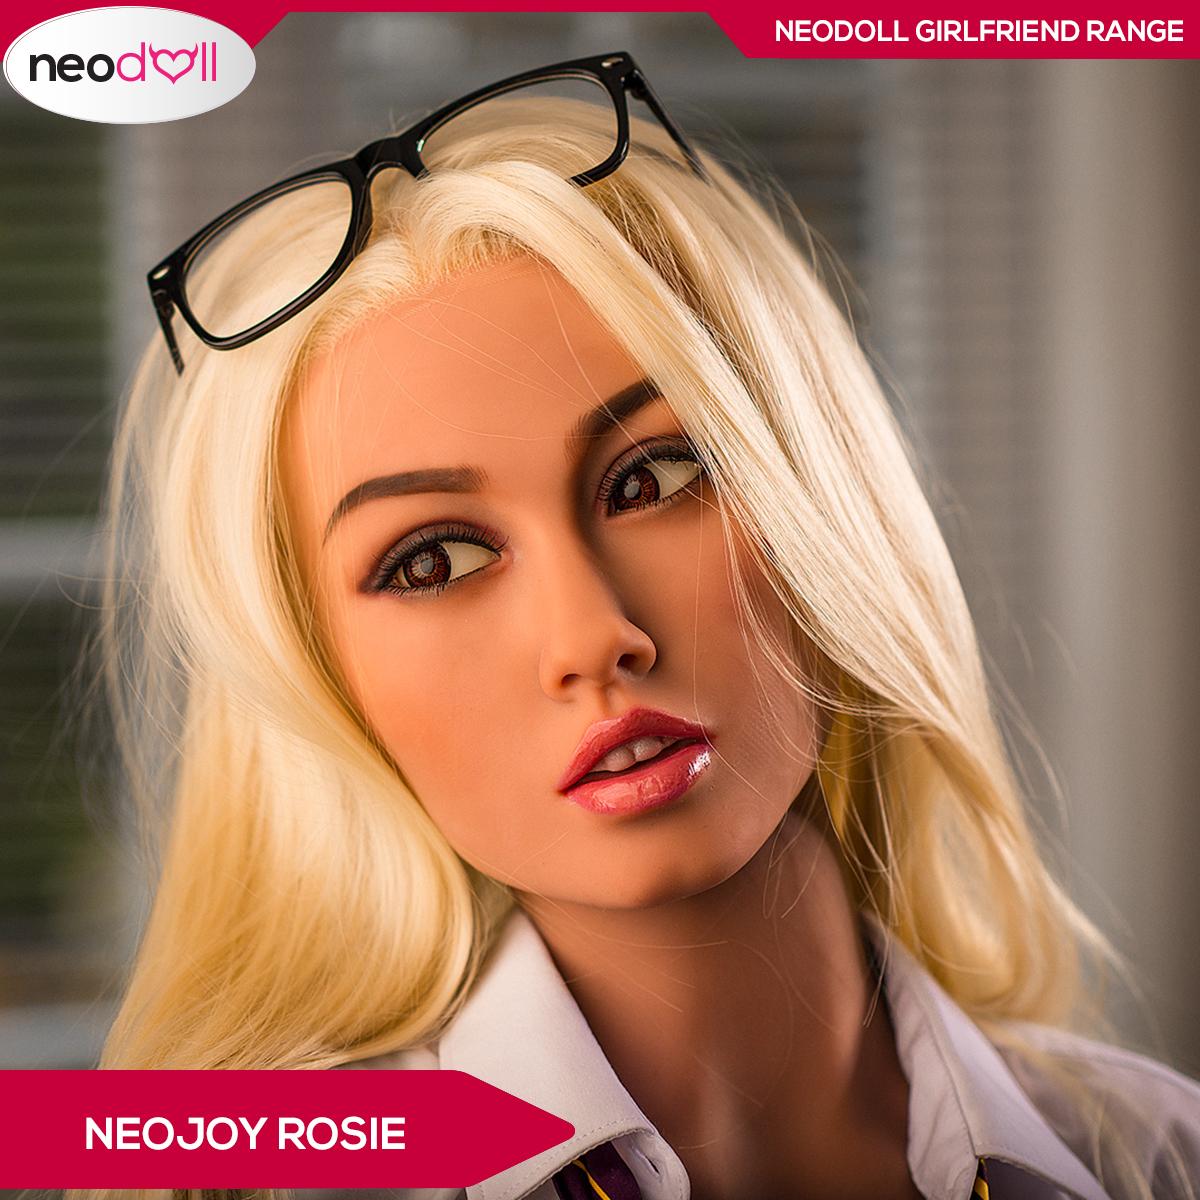 Neojoy Rosie 158cm Blond Girlfriend Range